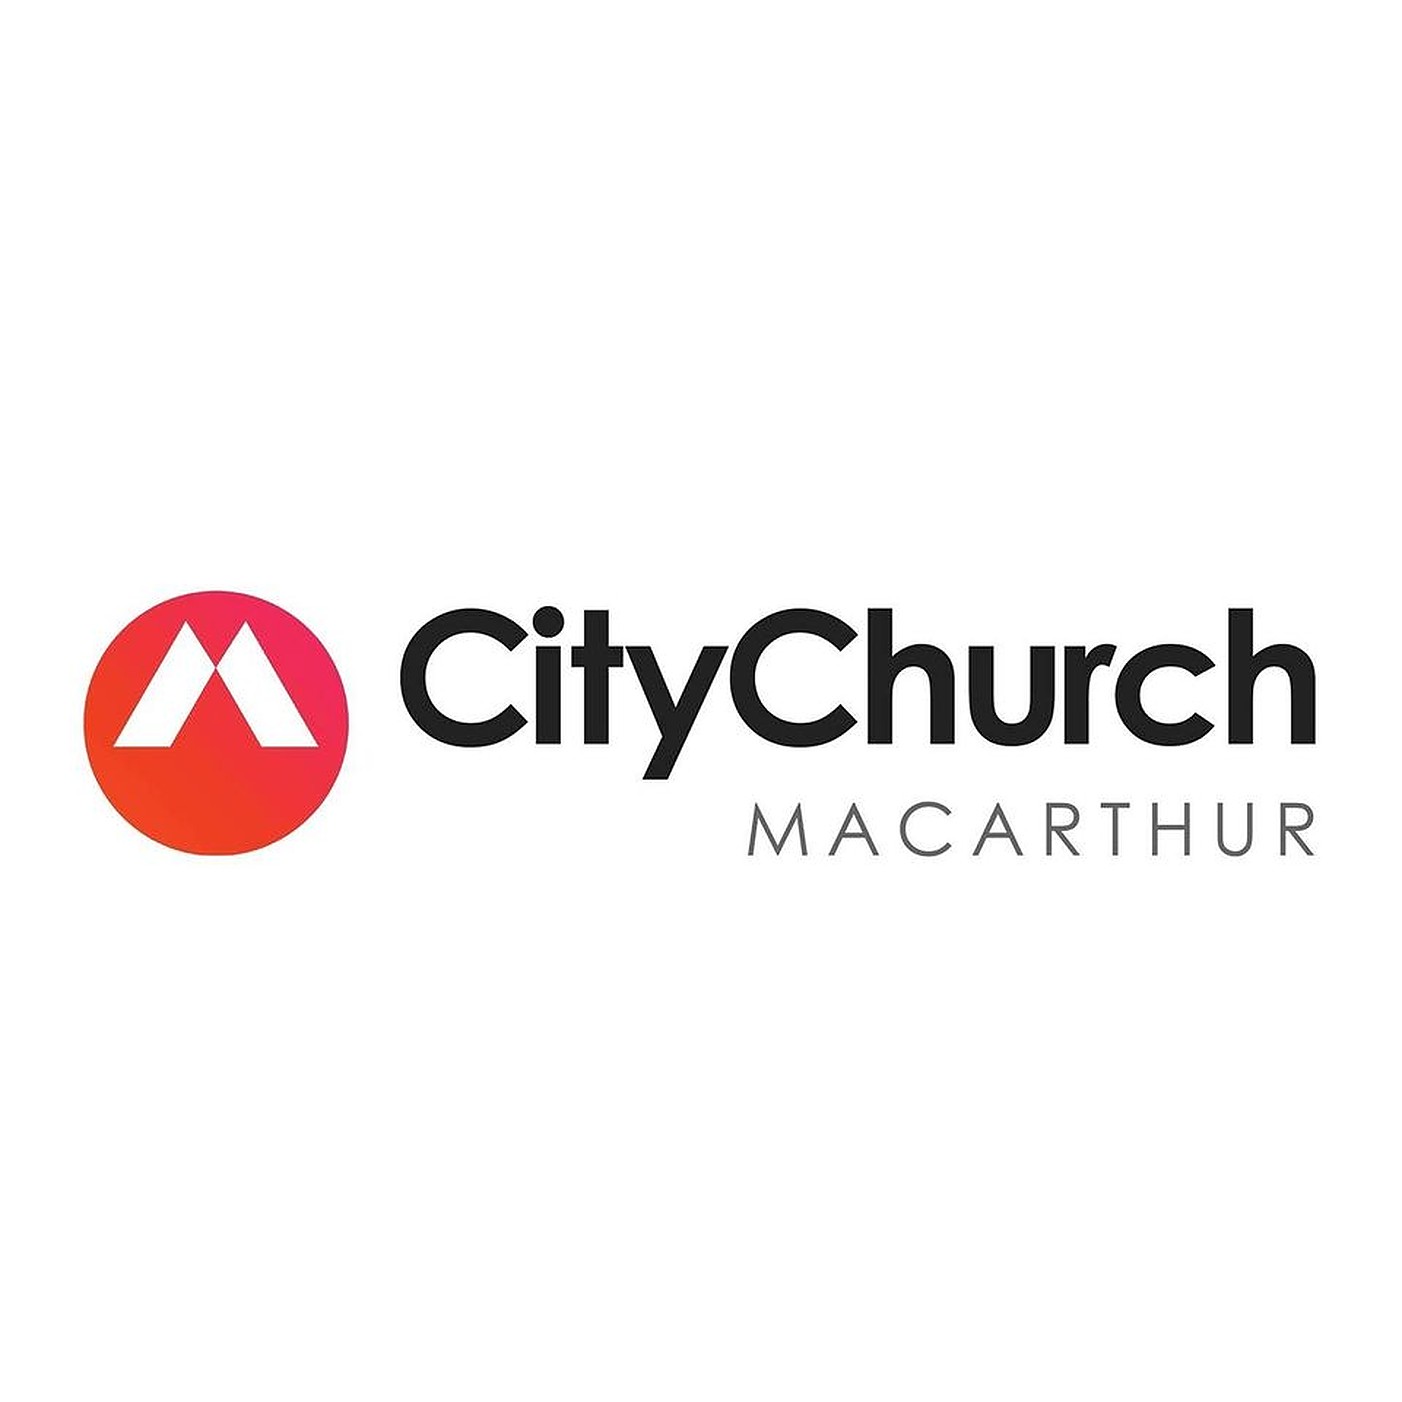 City Church Macarthur